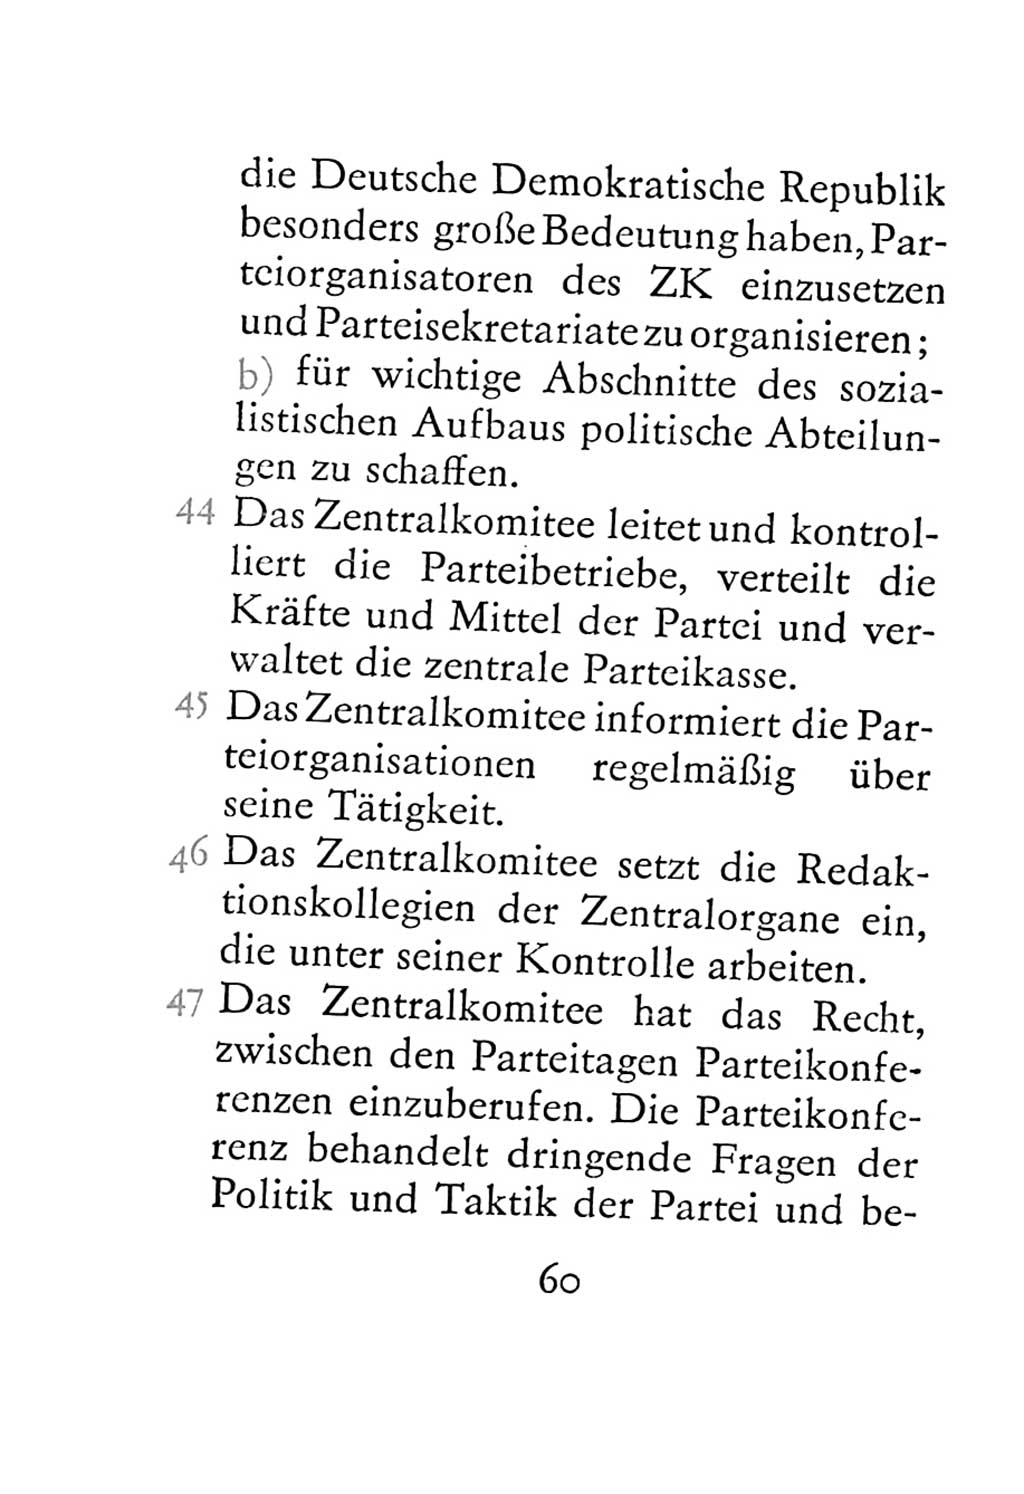 Statut der Sozialistischen Einheitspartei Deutschlands (SED) 1967, Seite 60 (St. SED DDR 1967, S. 60)